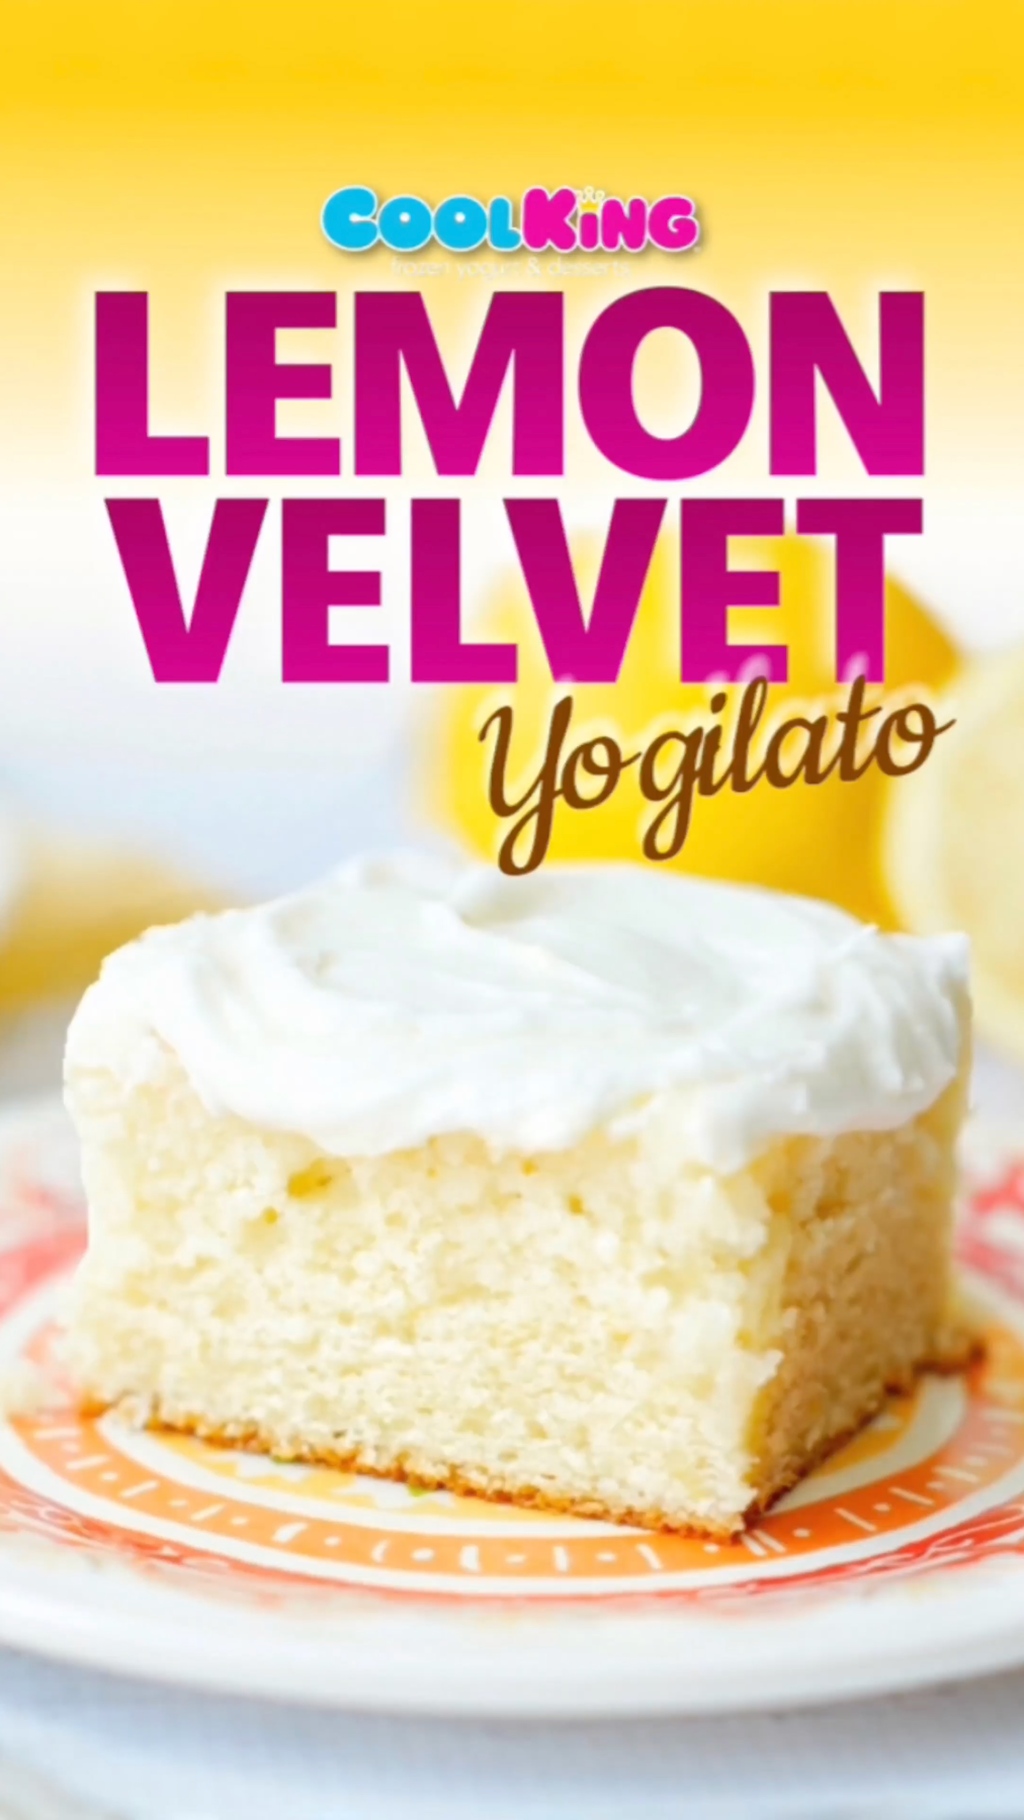 Cool King® “Lemon Velvet” Yogilato Motion Graphic & Flavor Card